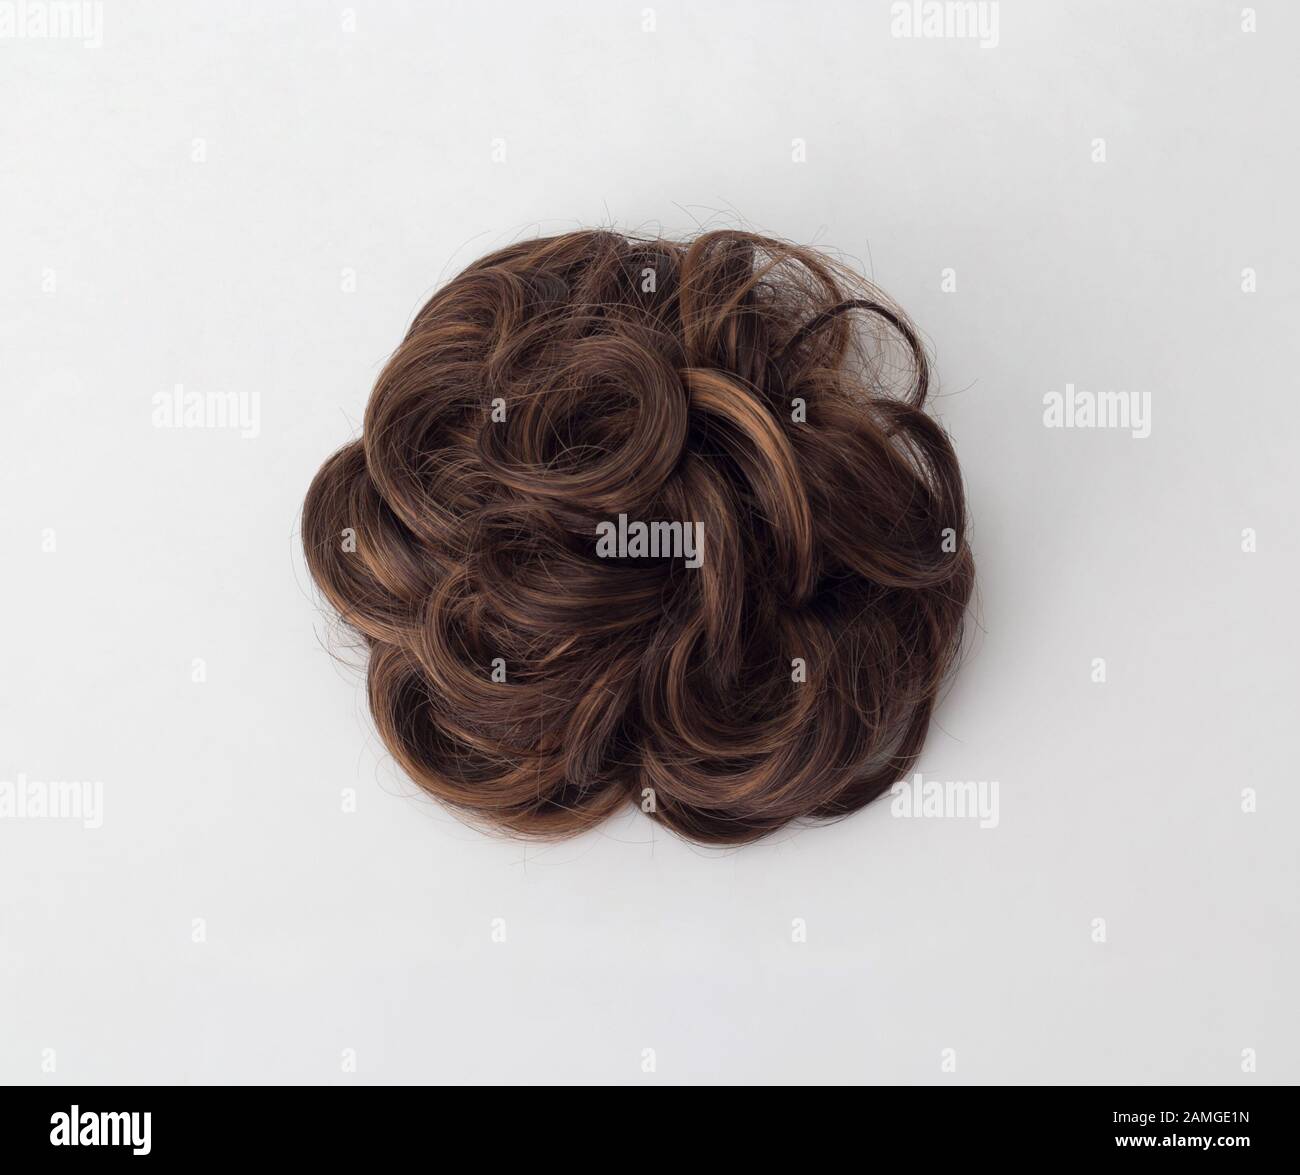 cheveux bruns disqués, conçus en épingle à cheveux, isolés sur fond blanc Banque D'Images